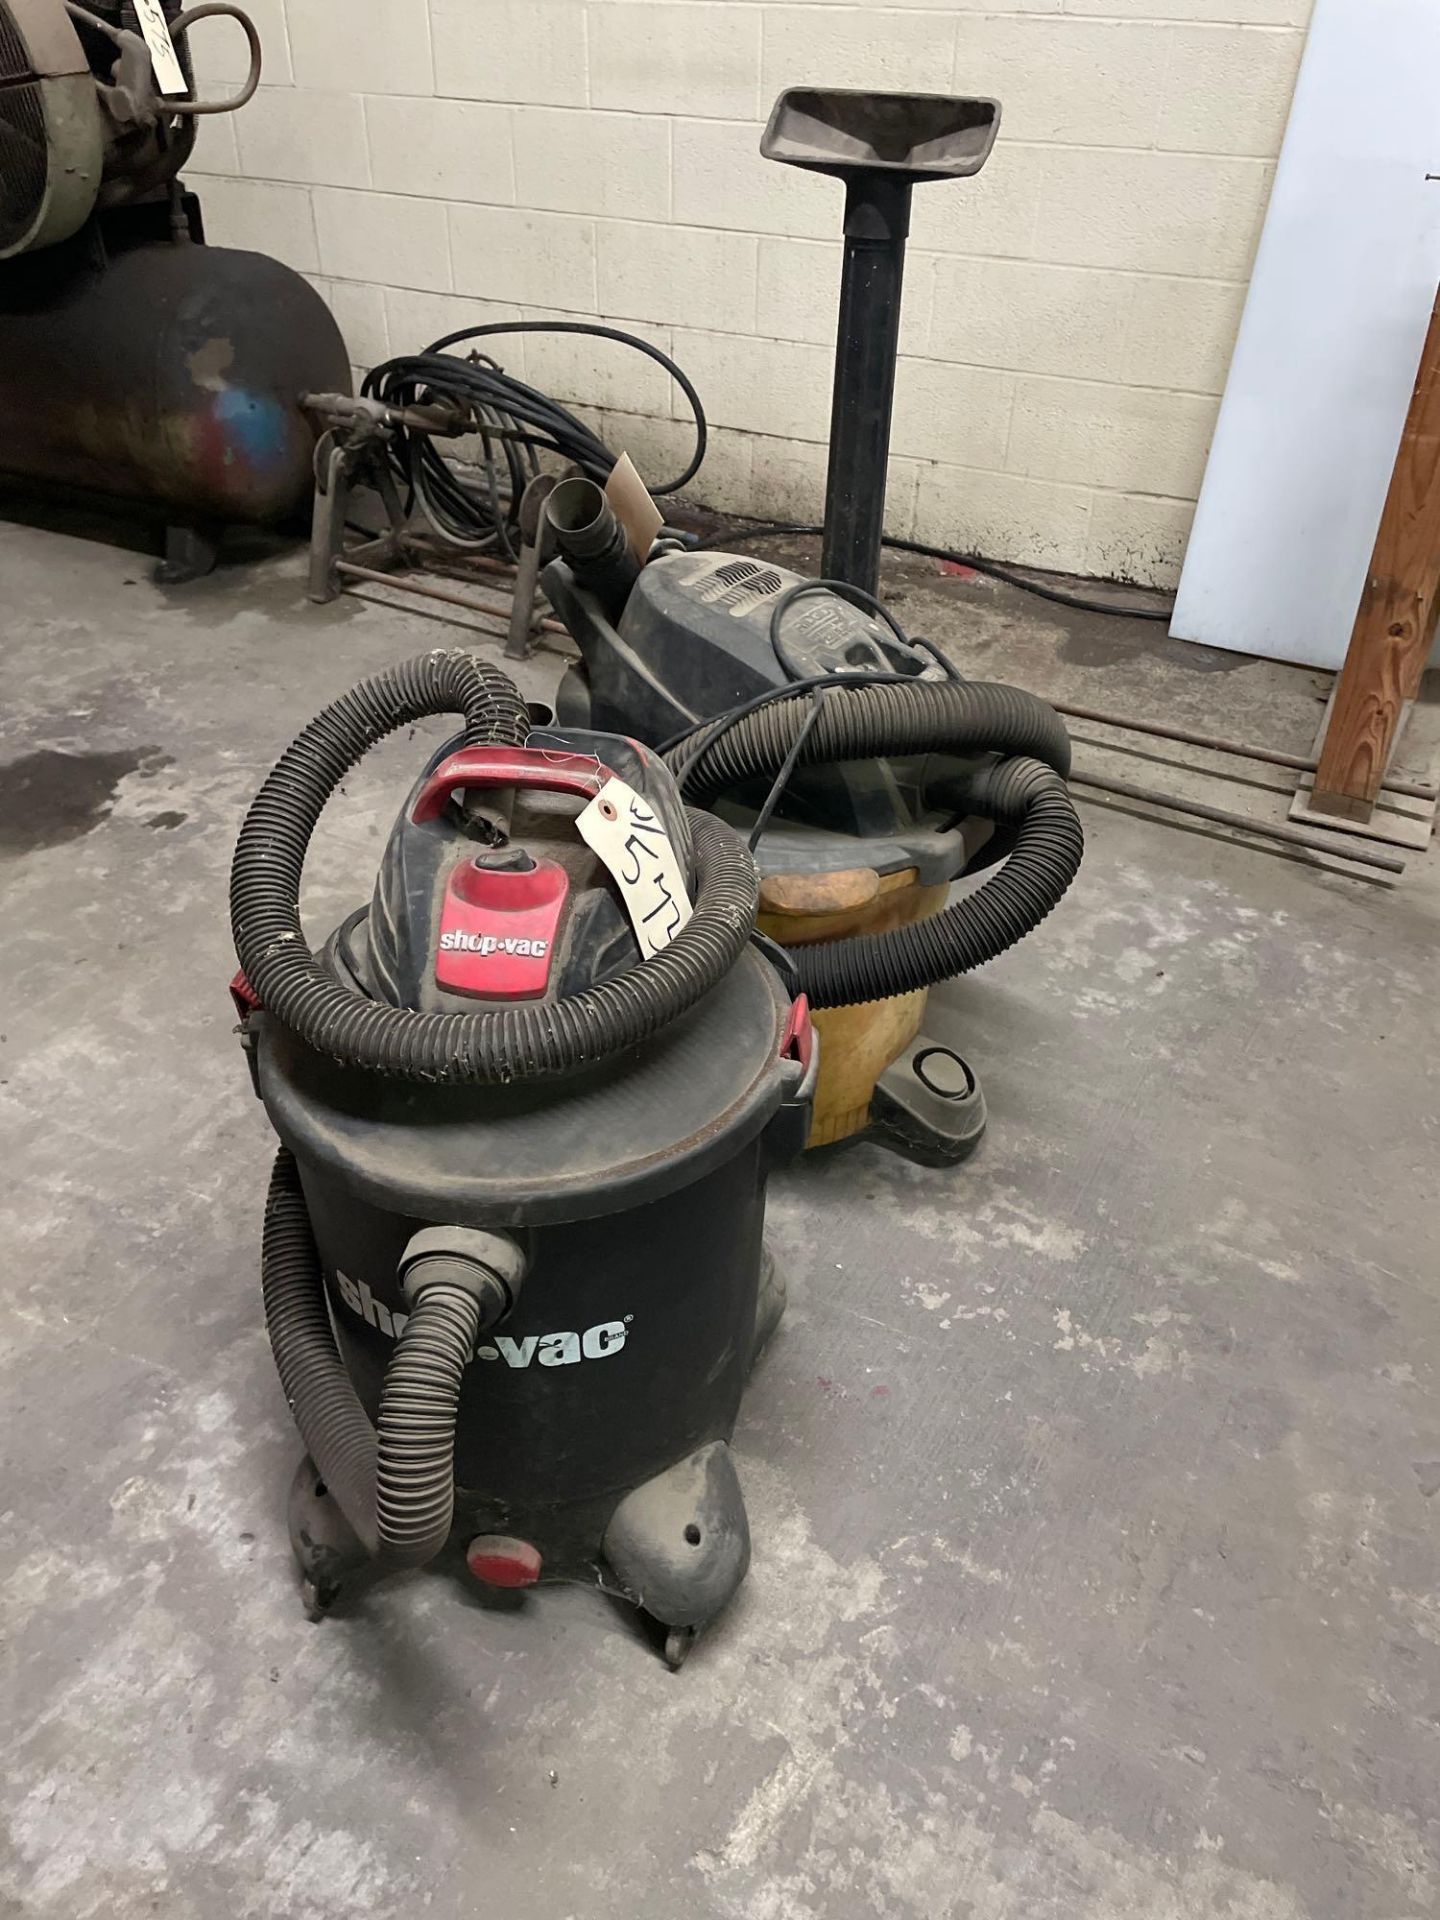 Lot of 2 Vacuums: (1) 10 Gallon Shop Vac (1) 12 Gallon Rigid wet/dry Shop Vac